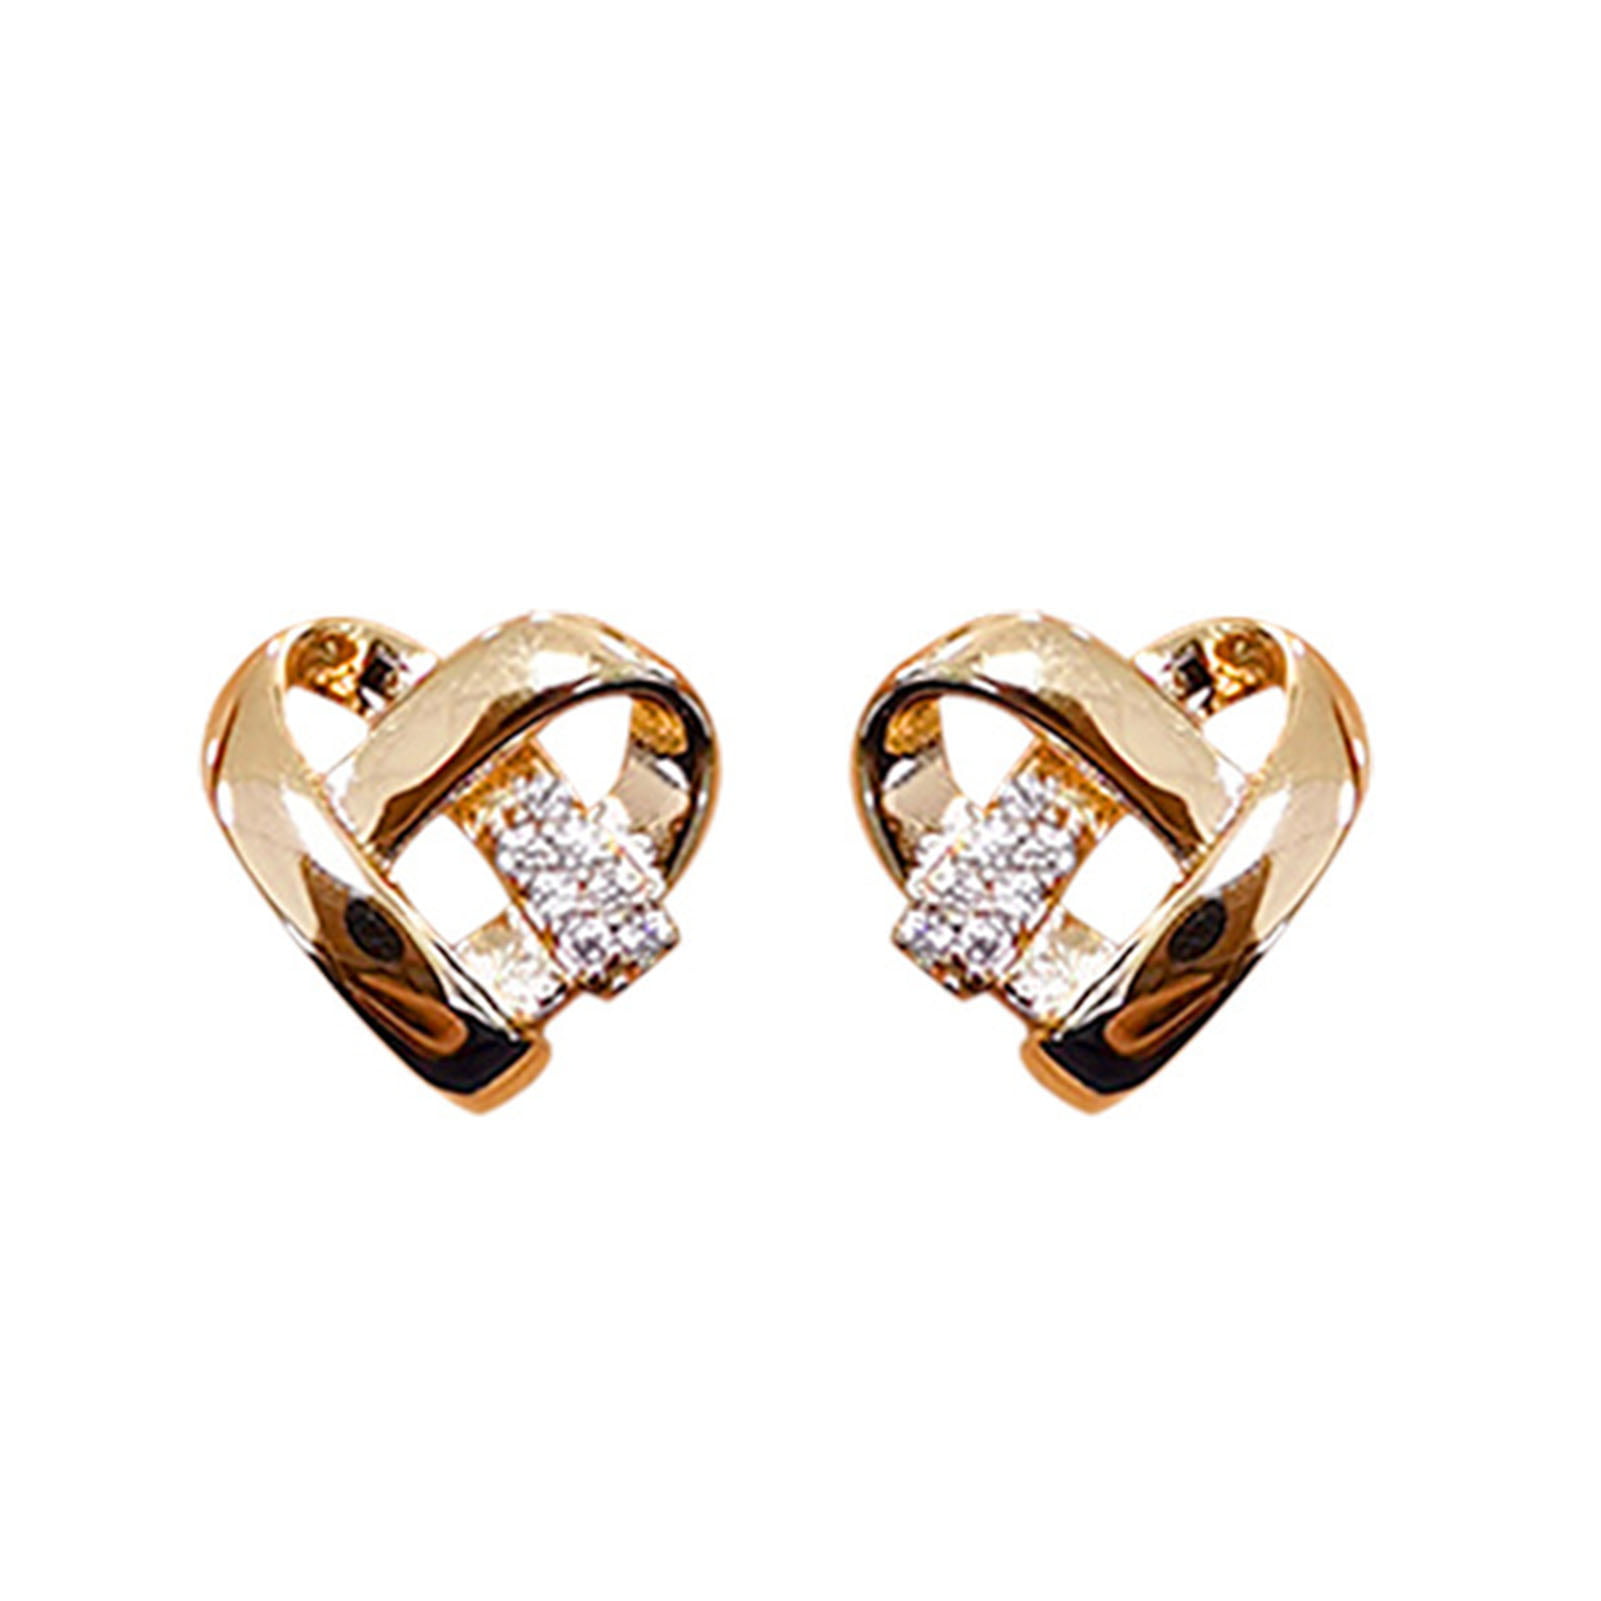 Grandest Birch Heart Love Letters Women Metal Ear Hoop Earrings Charming Jewelry Gift Copper Yellow, Adult Unisex, Size: One Size